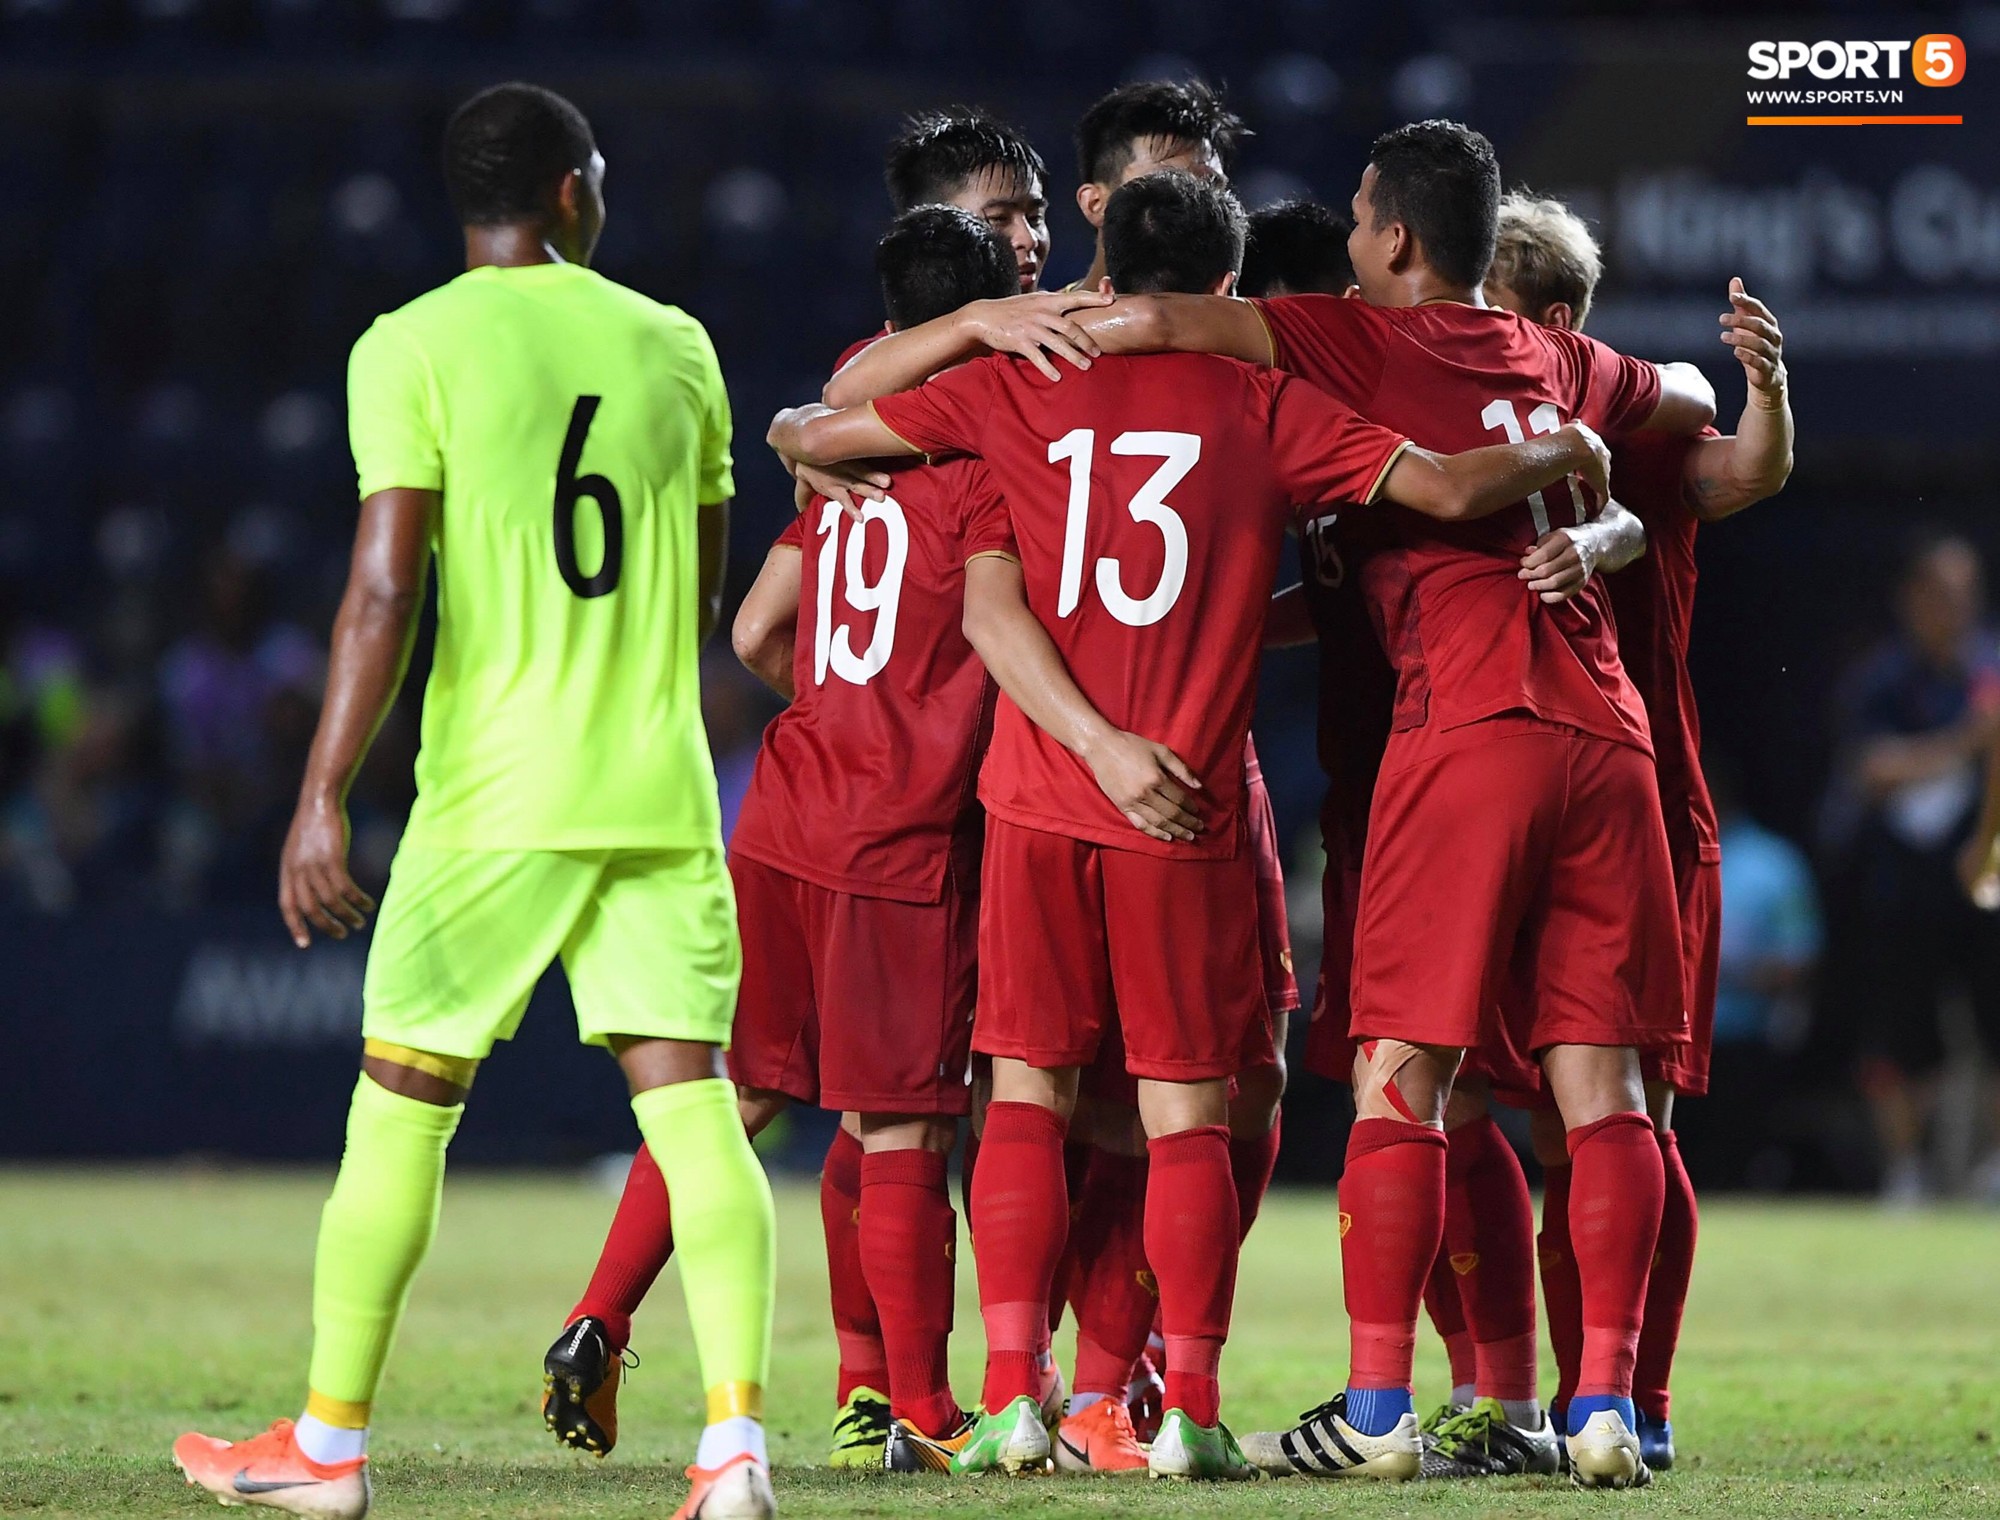 Thua chung kết King's Cup, tuyển Việt Nam vẫn có lợi thế bất ngờ này ở vòng loại World Cup 2022 - Ảnh 1.